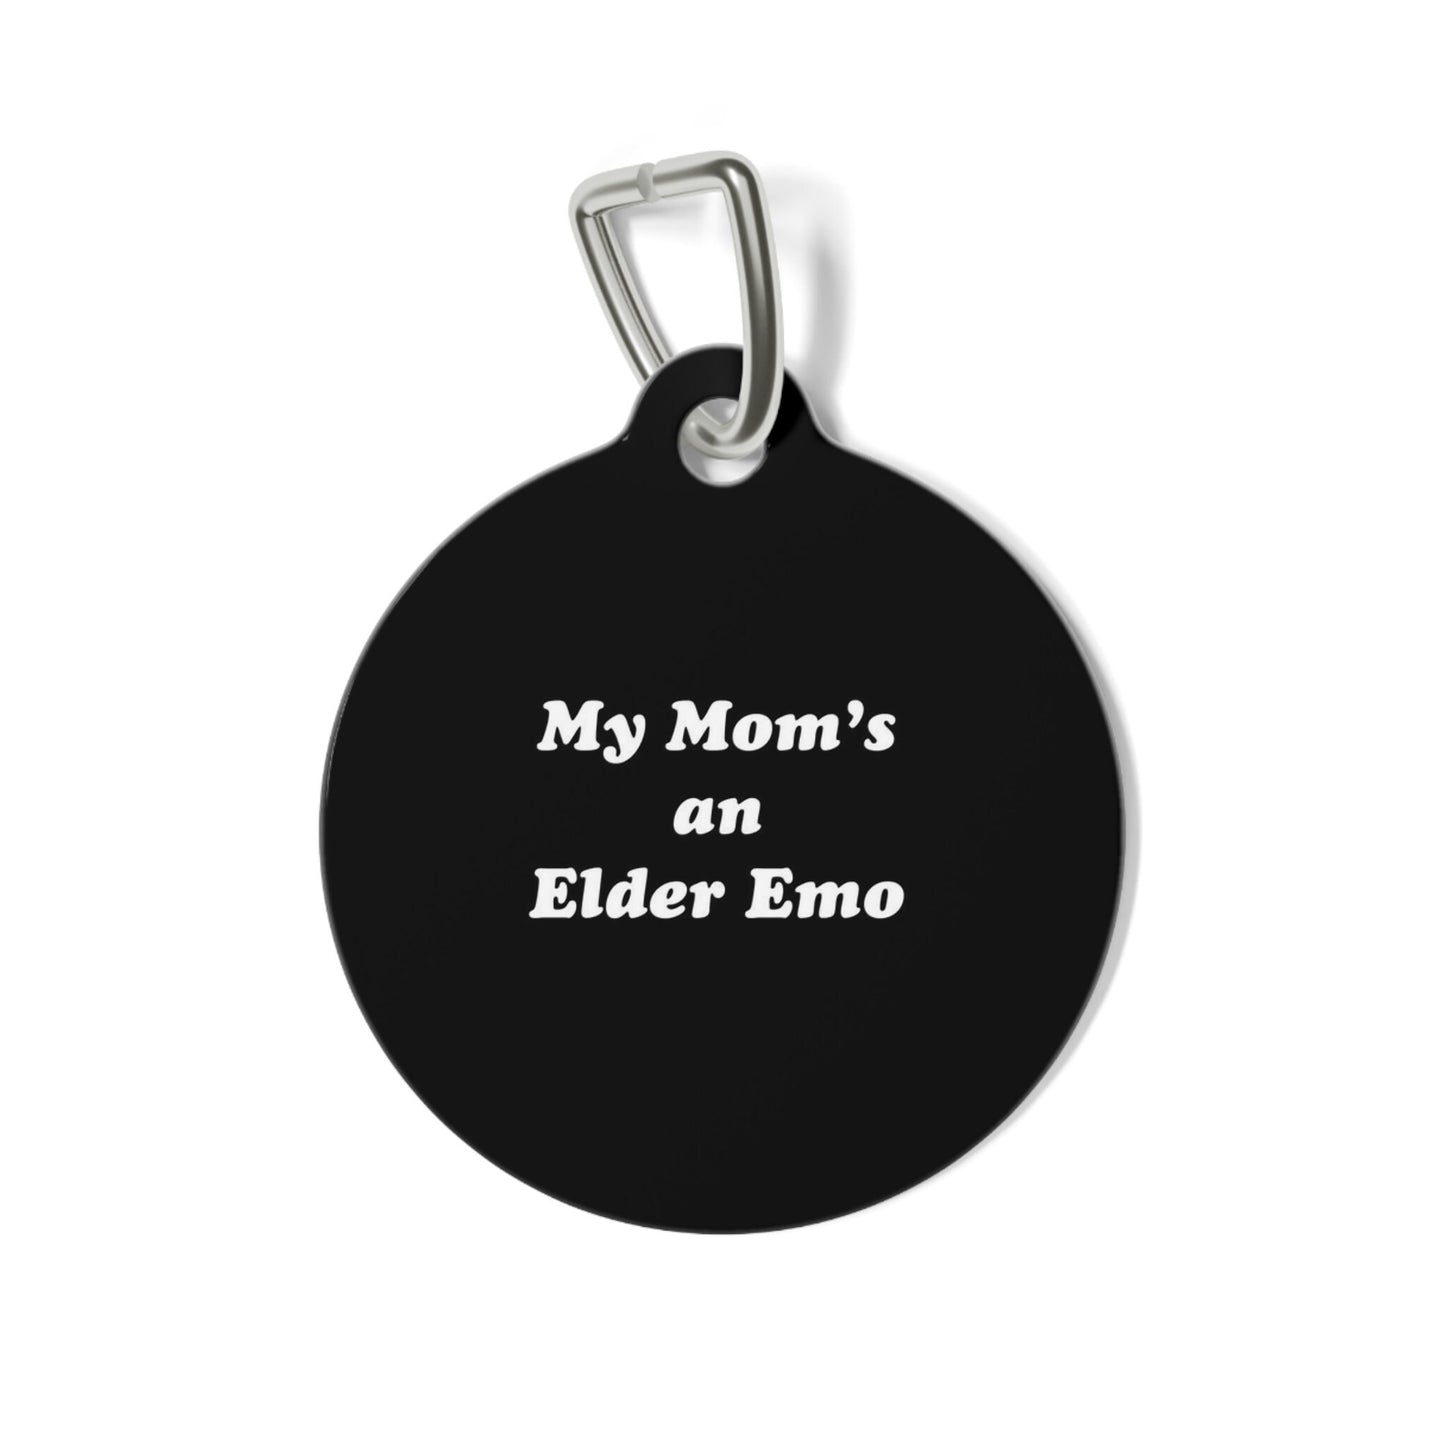 Elder Emo Dog Tag